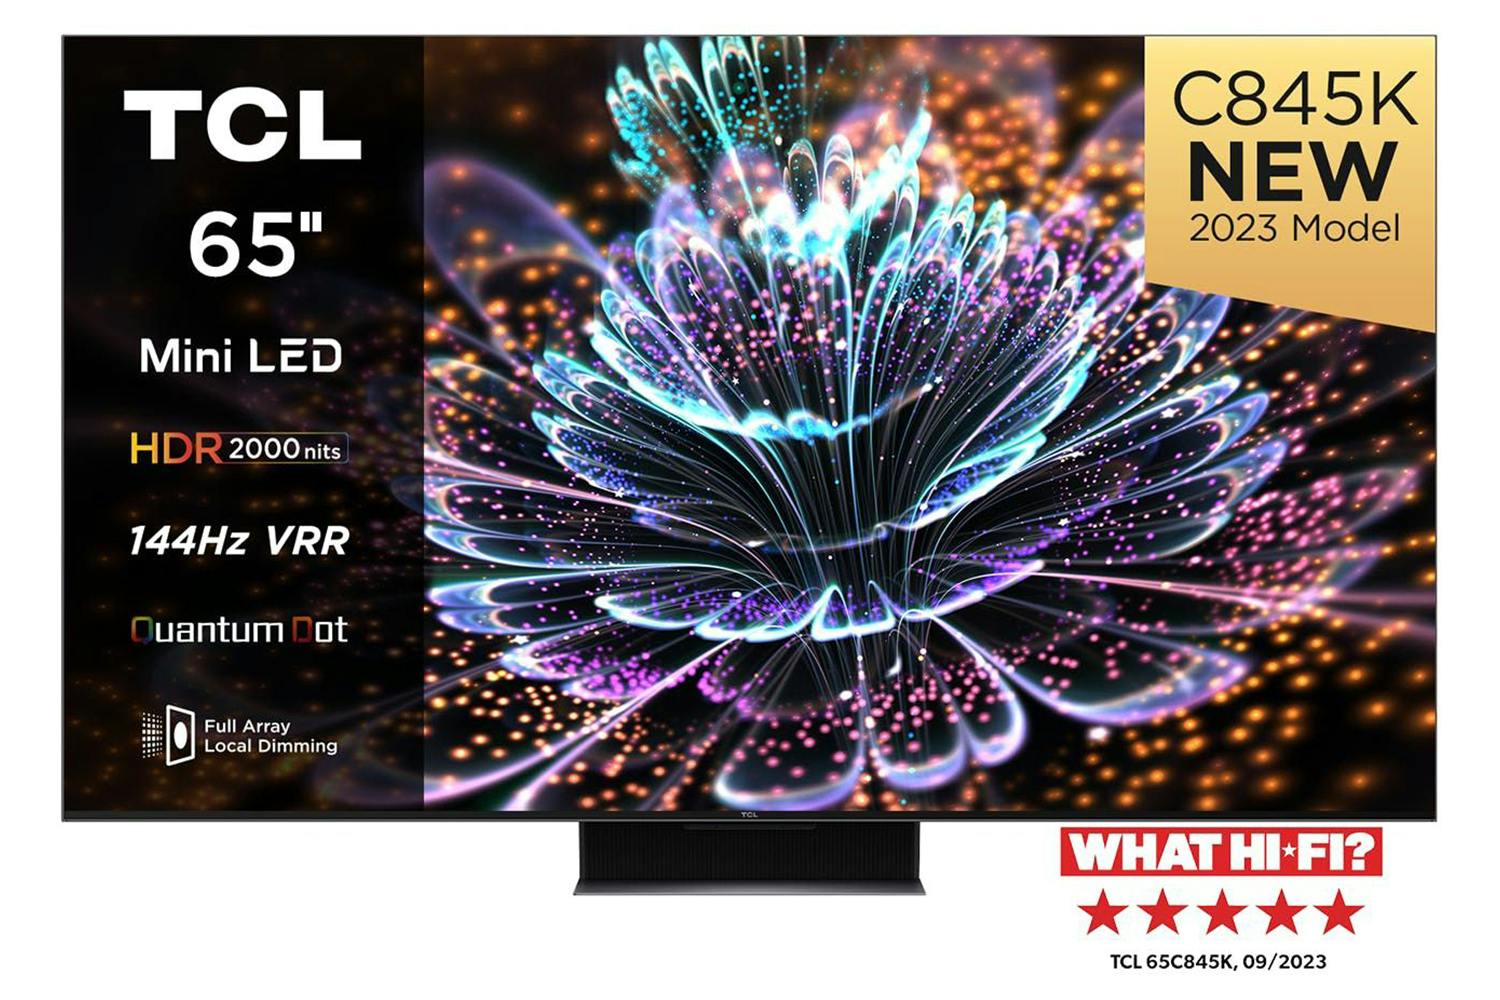 Smart TV TCL 65C805 65 4K Ultra HD LED HDR AMD FreeSync